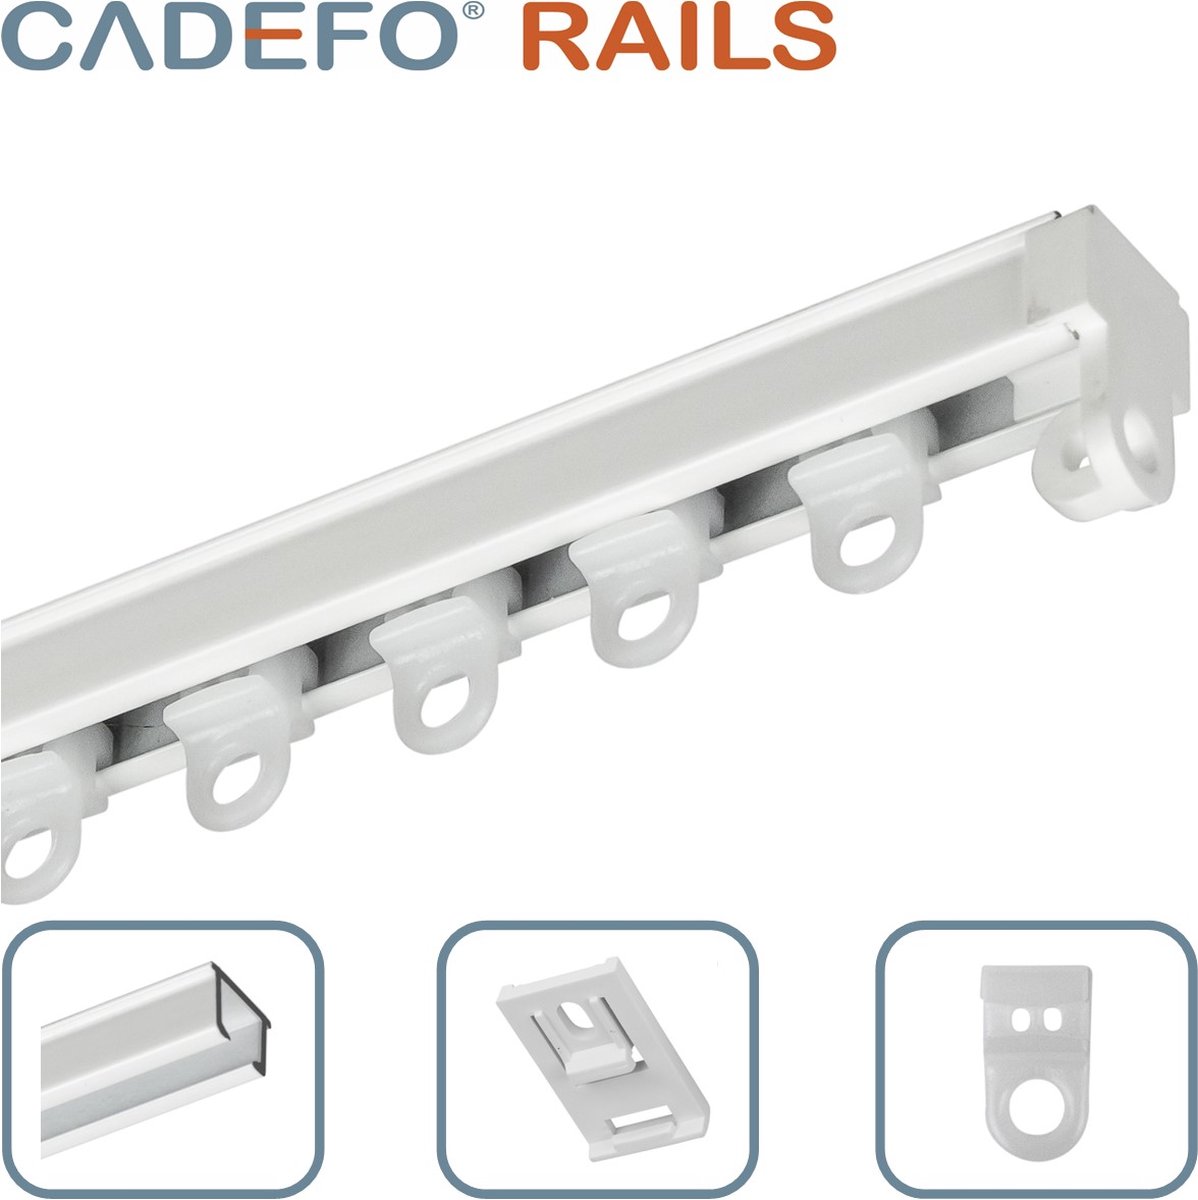 CADEFO RAILS (151 - 200 cm) Gordijnrails - Compleet op maat! - UIT 1 STUK - Leverbaar tot 6 meter - Plafondbevestiging - Lengte 187 cm